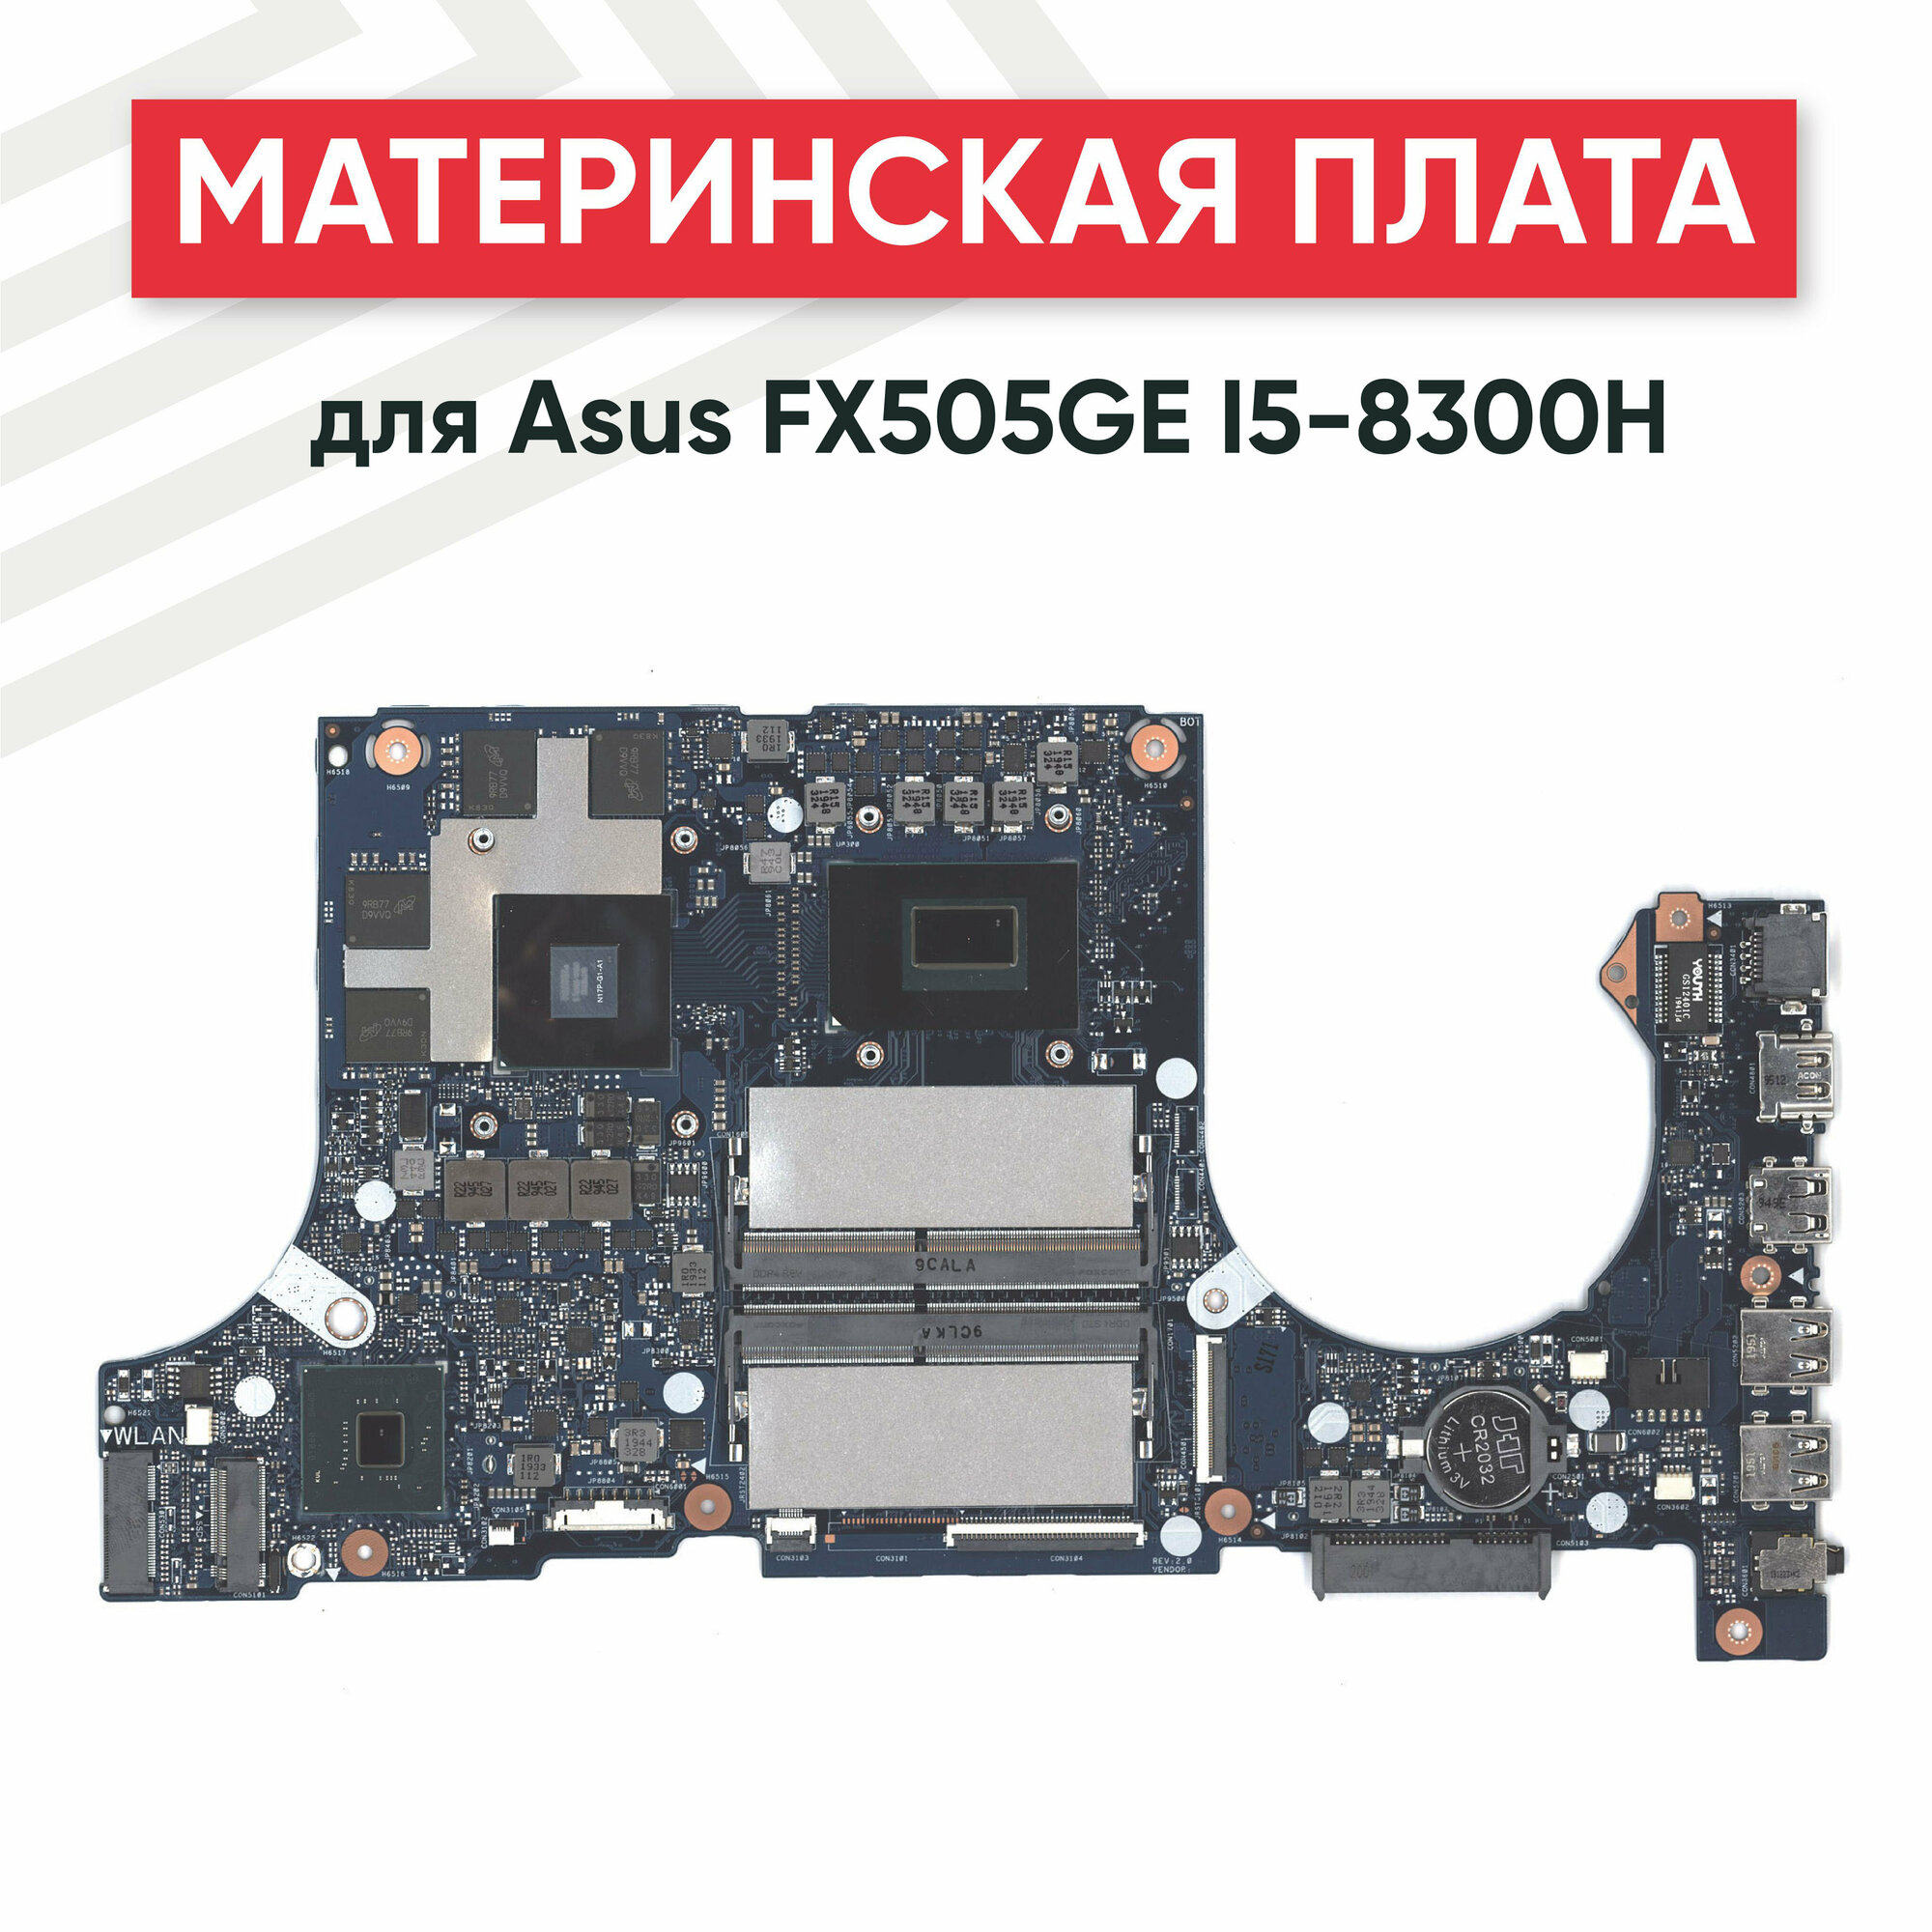 Материнская плата для Asus FX505GE I5-8300H